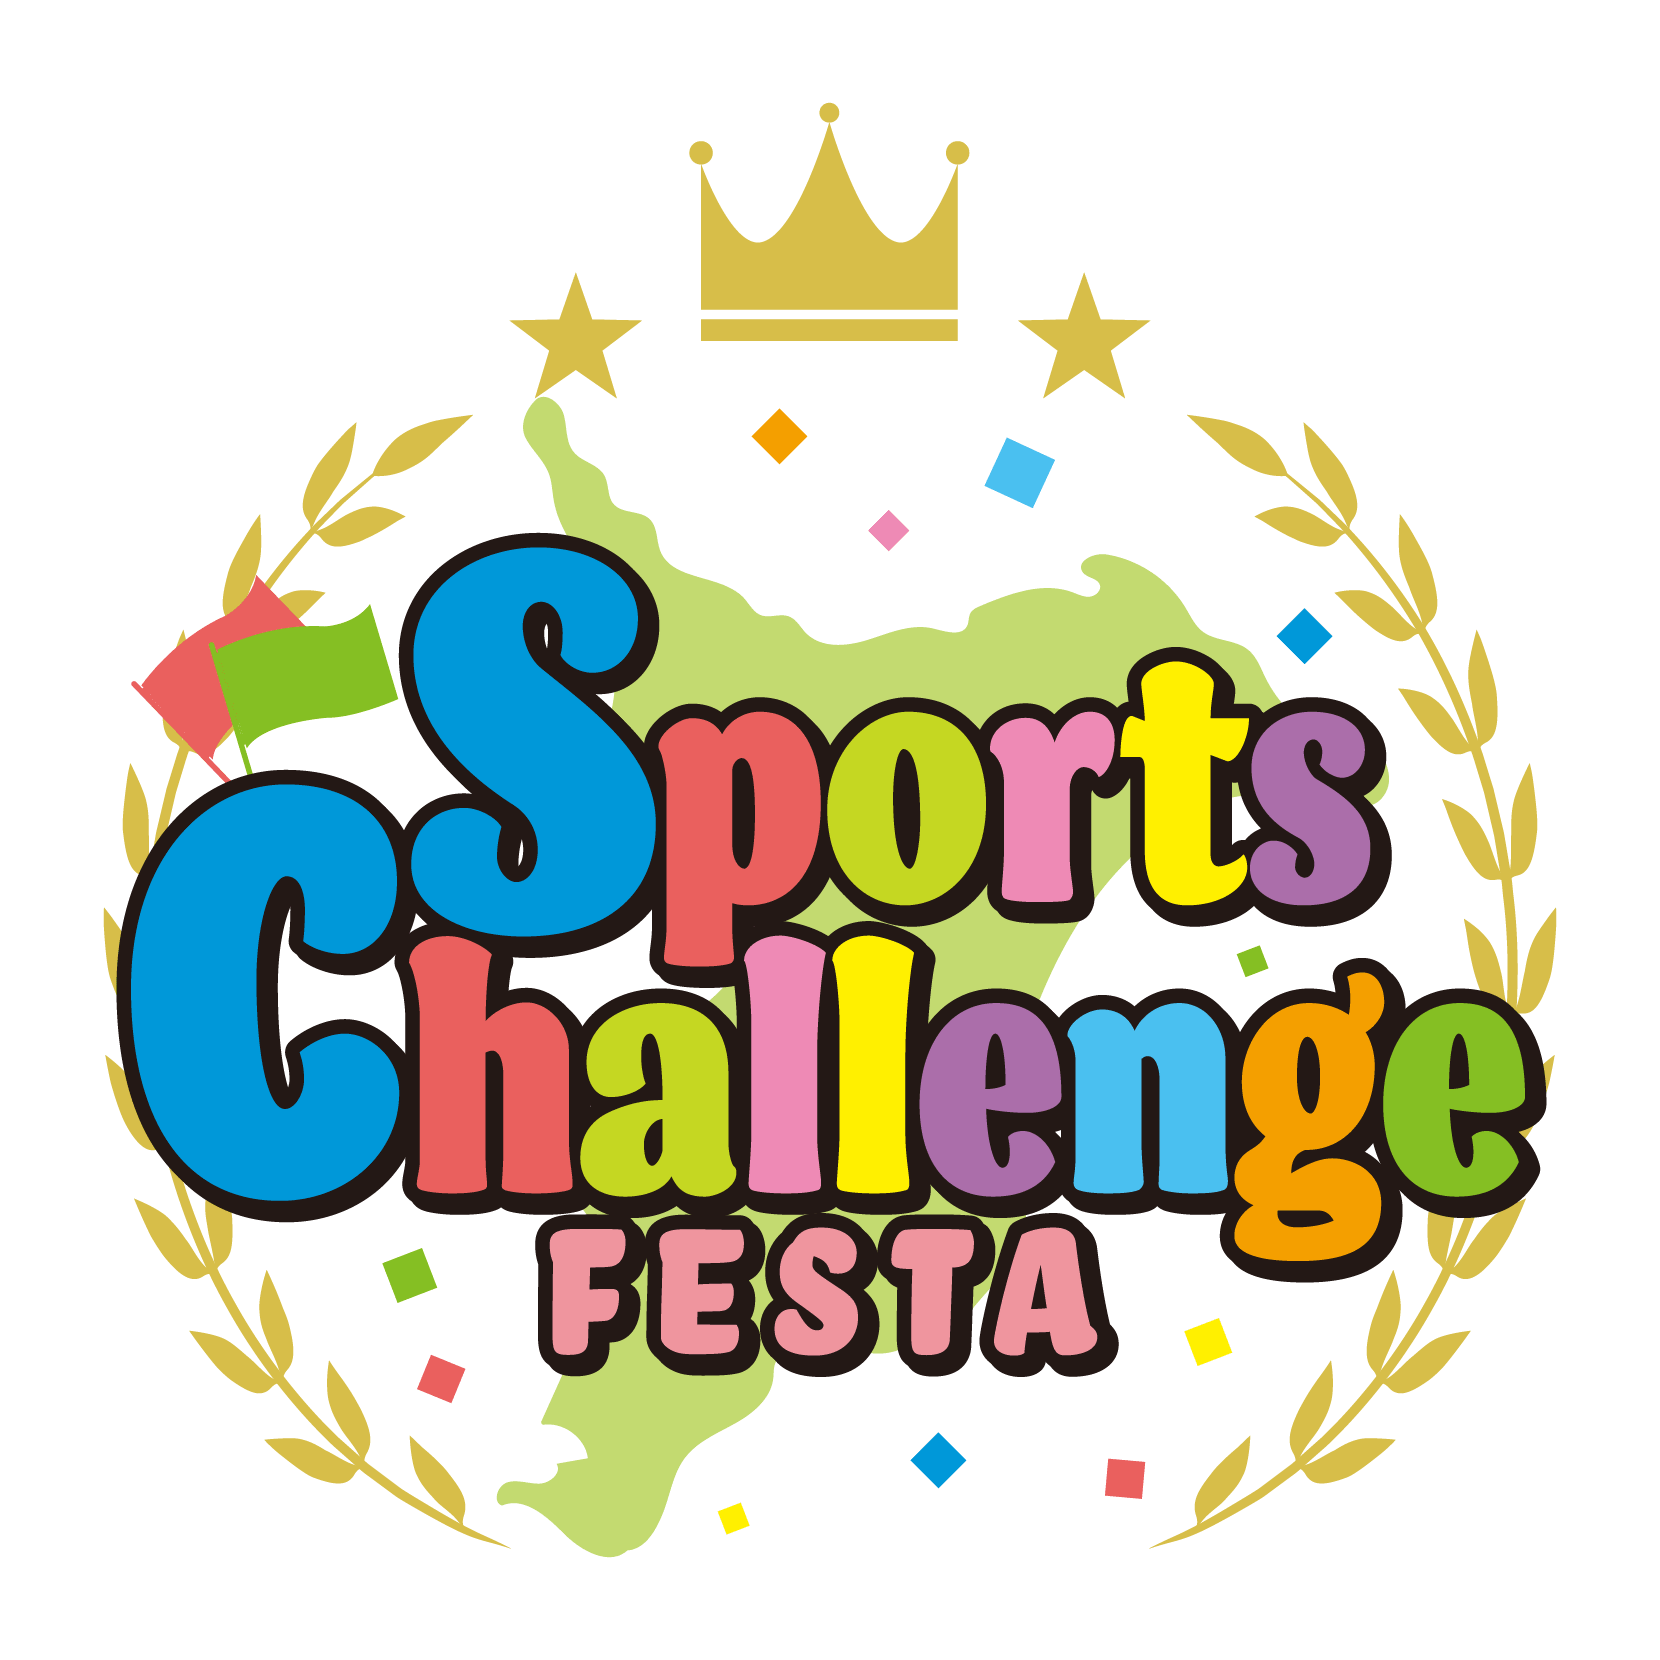 AEON Sports Challenge FESTA